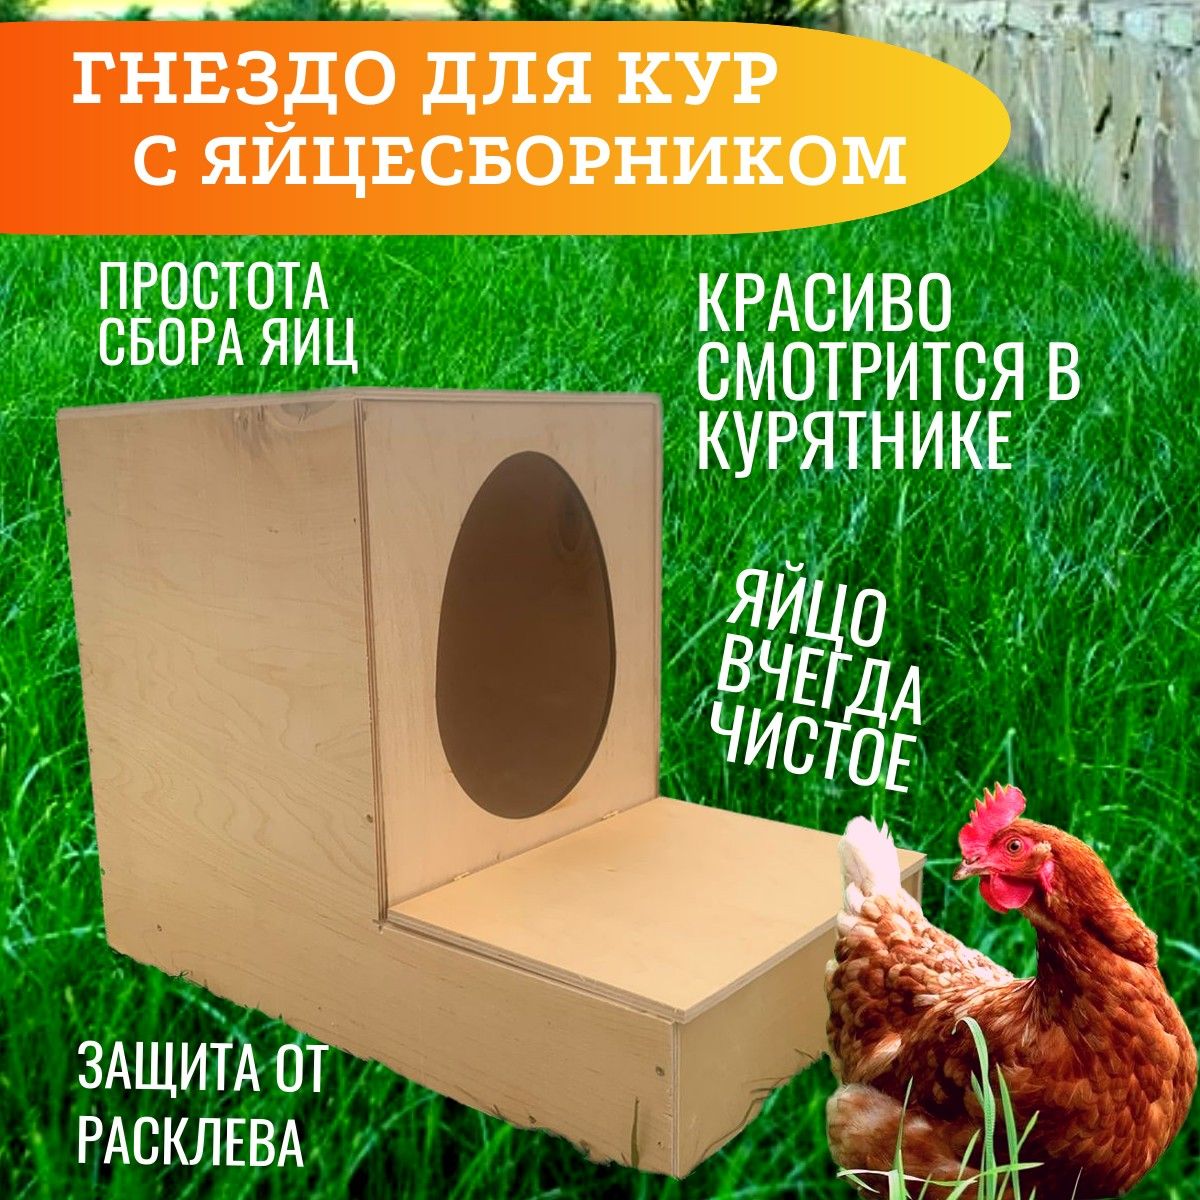 Гнездо для кур-несушек Gaun пластик с яйцесборником () купить в Москве